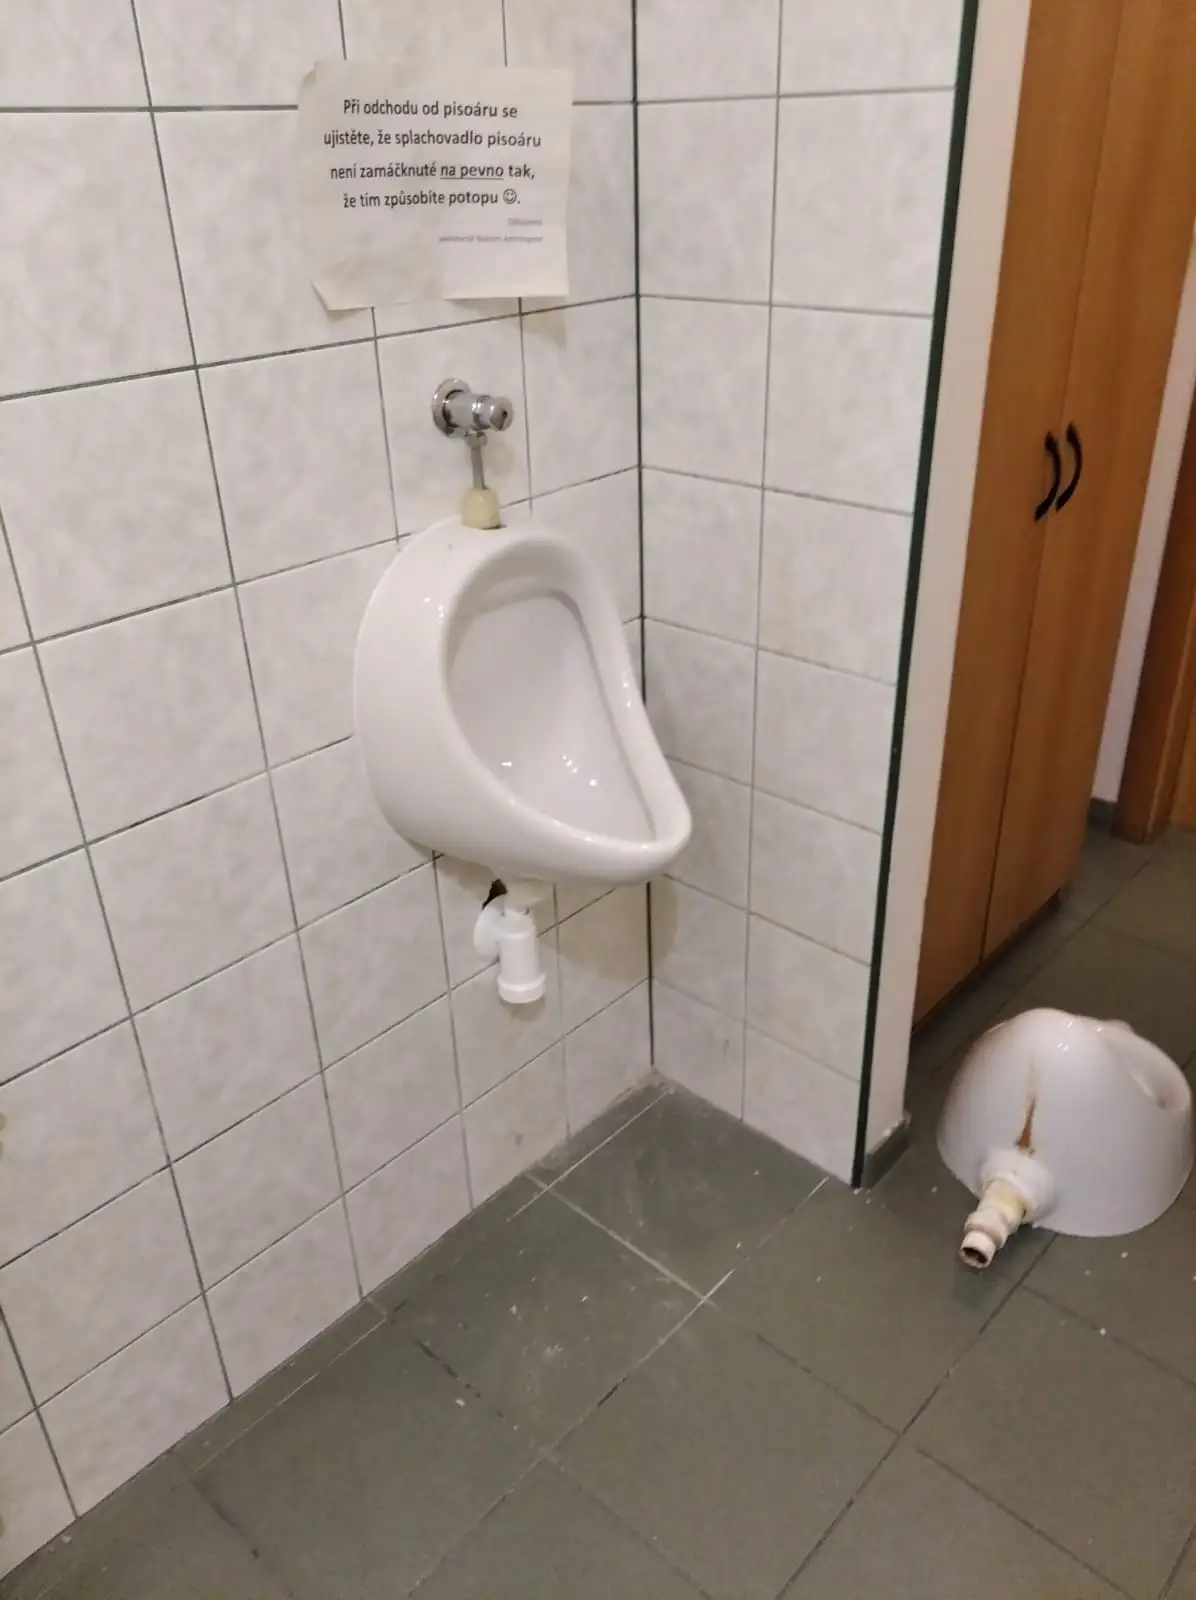 Instalace, demontáž, montáž WC v Praze a okoli	Výměna pisoaru, zachodu, wc